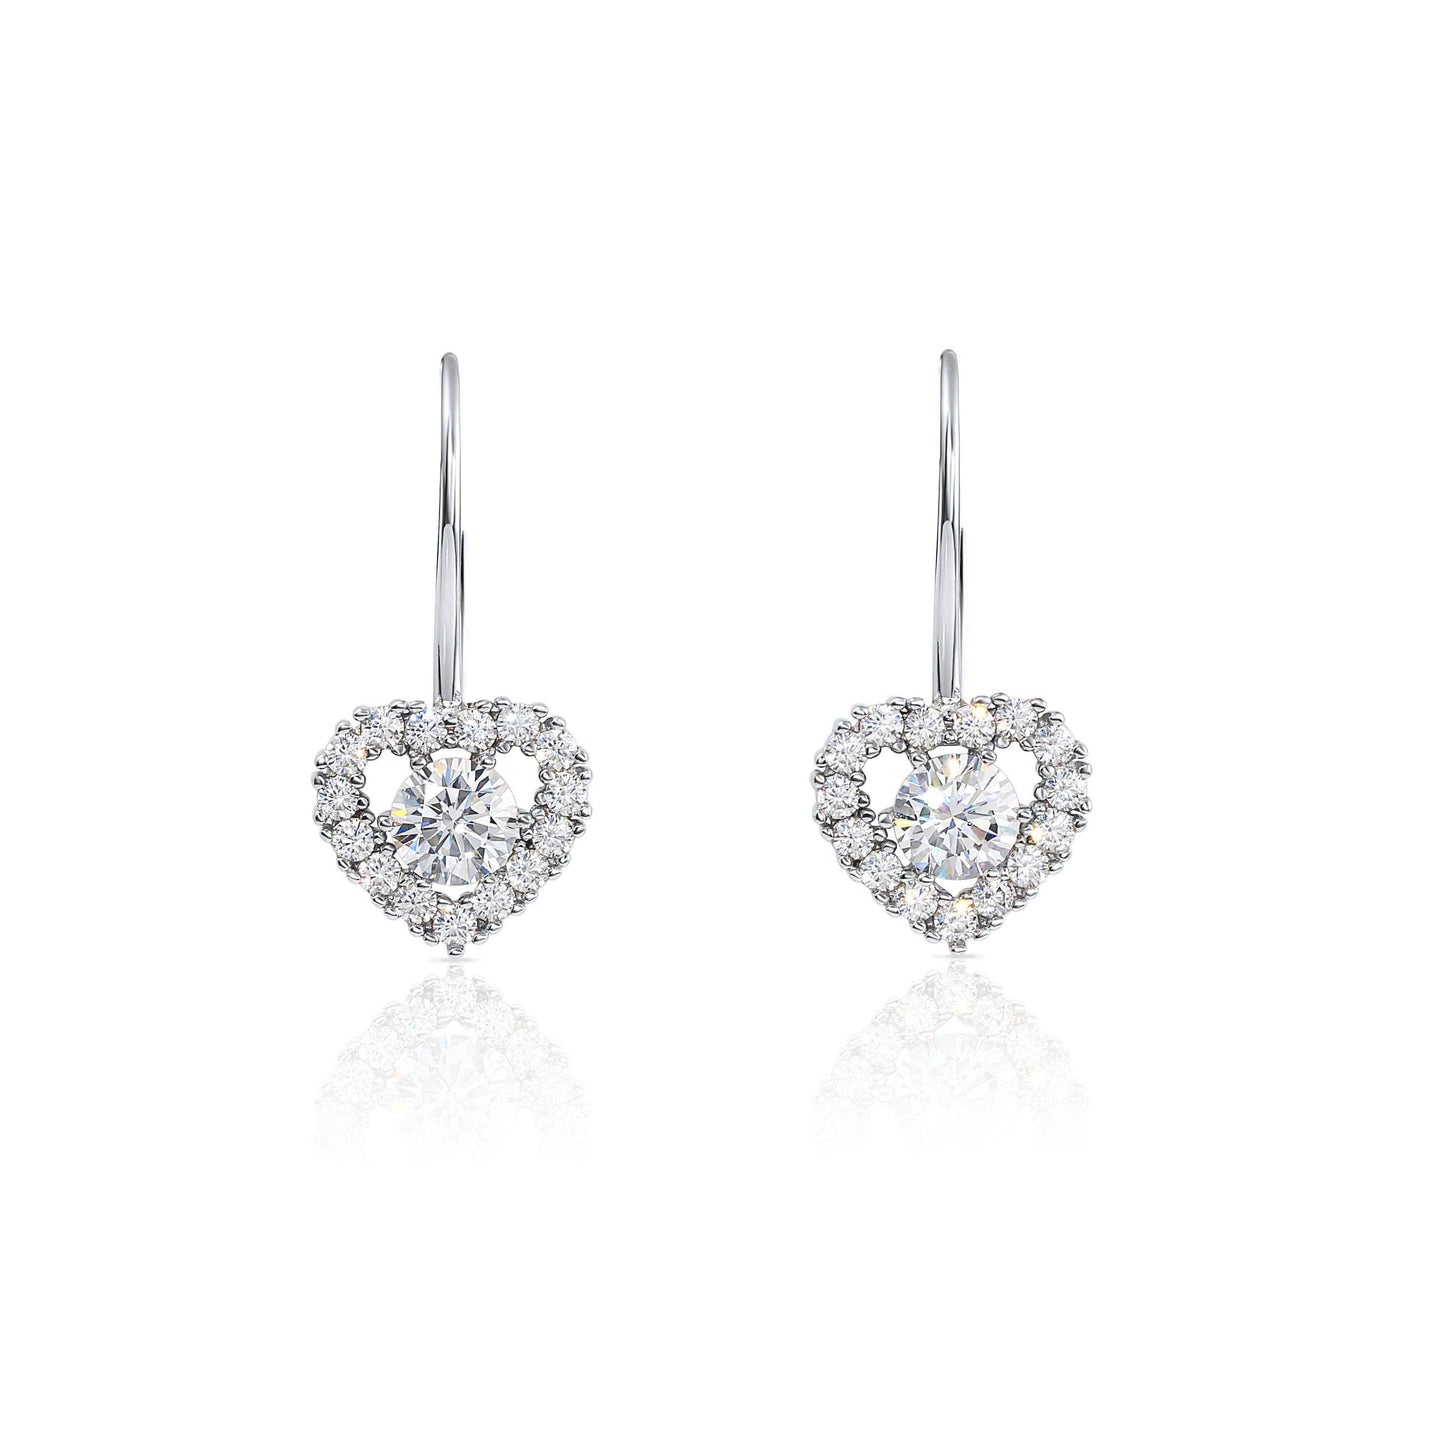 Heart Earrings in Sterling Silver, Dangle Drop Design